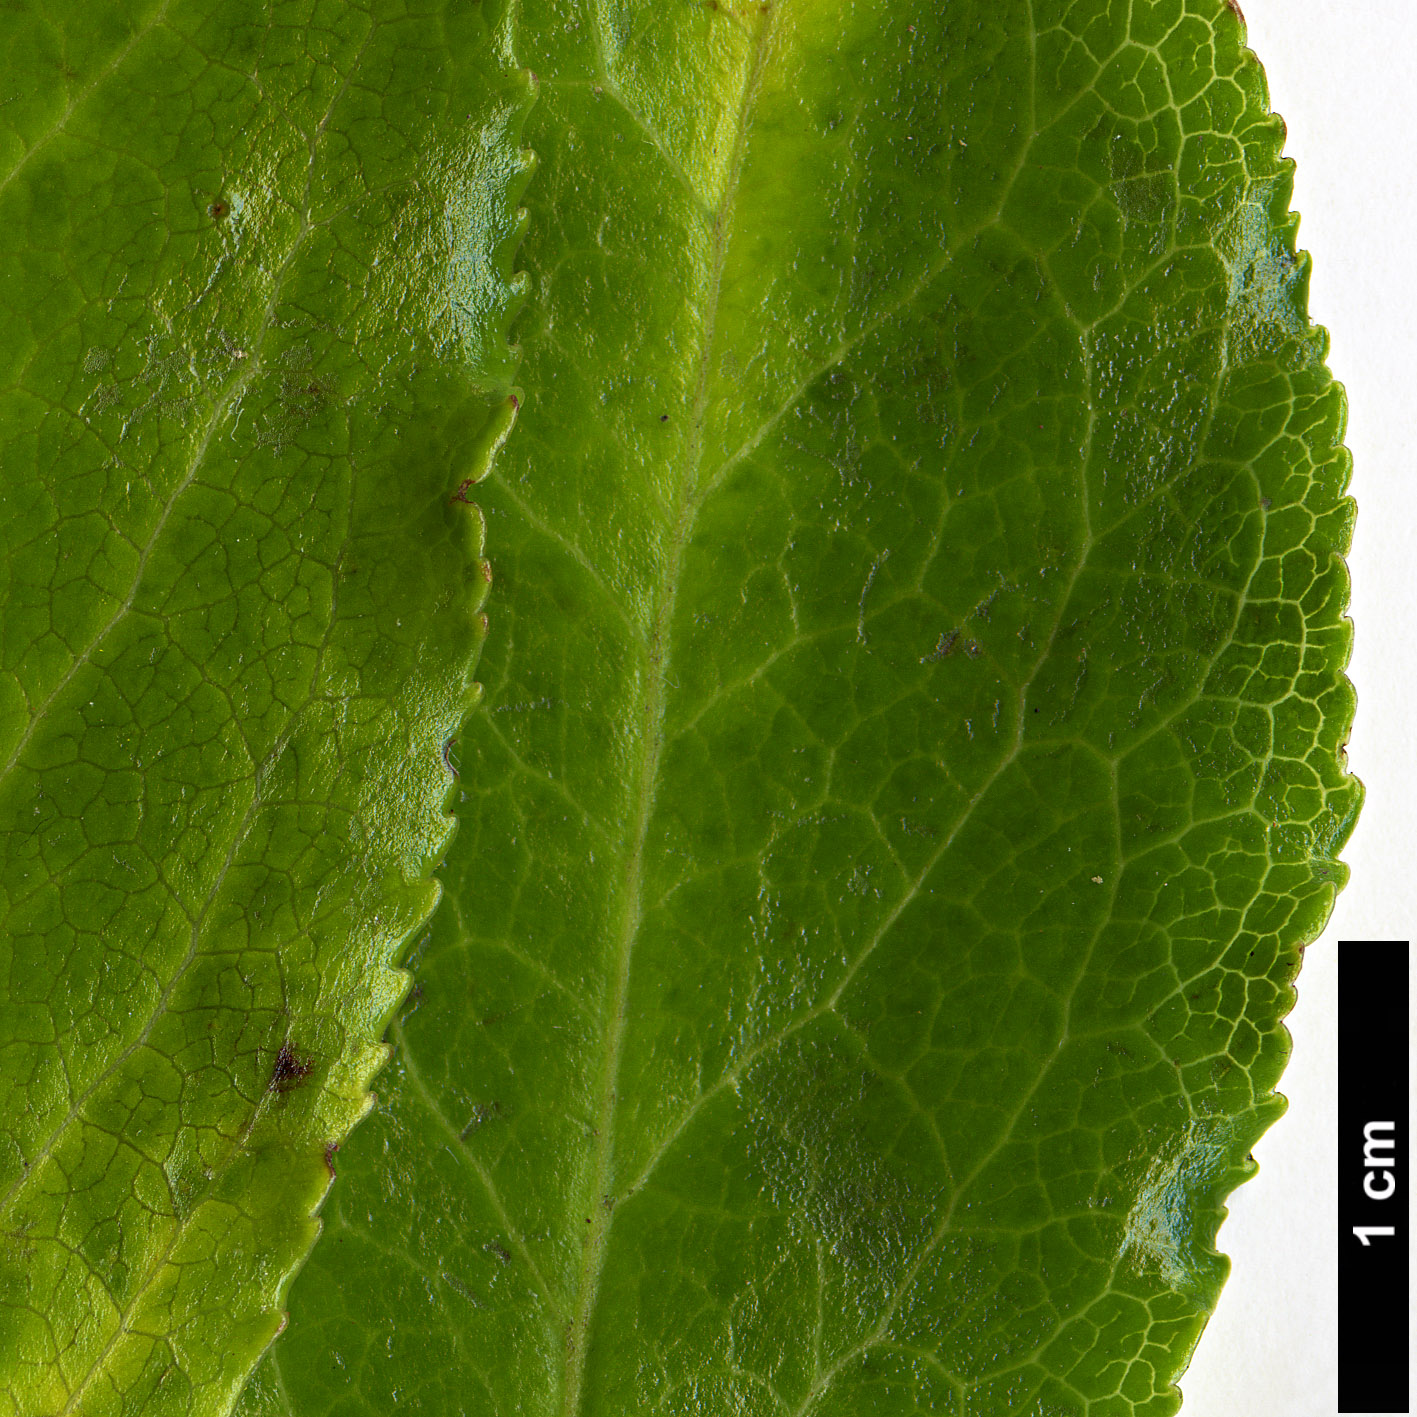 High resolution image: Family: Ericaceae - Genus: Vaccinium - Taxon: cylindraceum